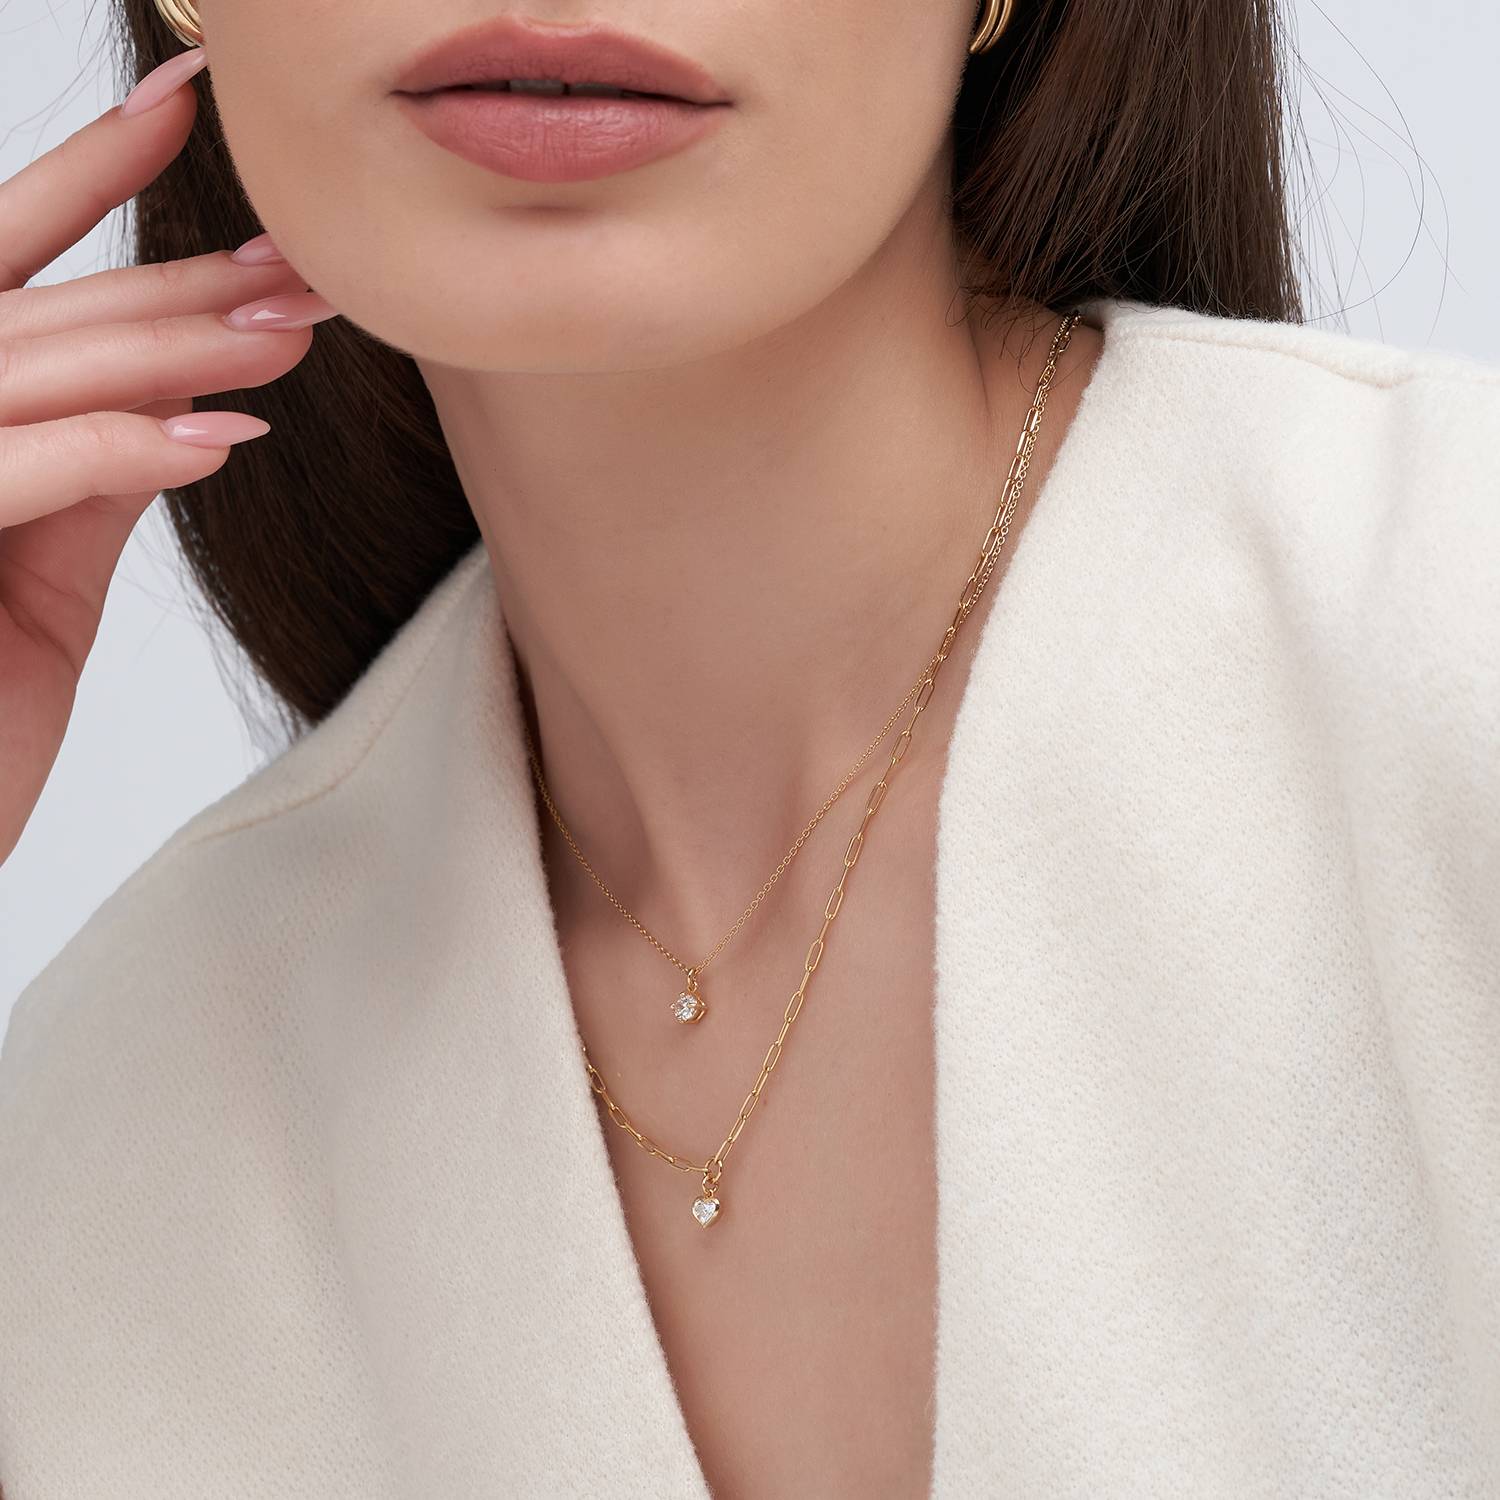 Te Amo 0.2 ct Heart Shape Diamond Necklace - Gold Vermeil-3 product photo